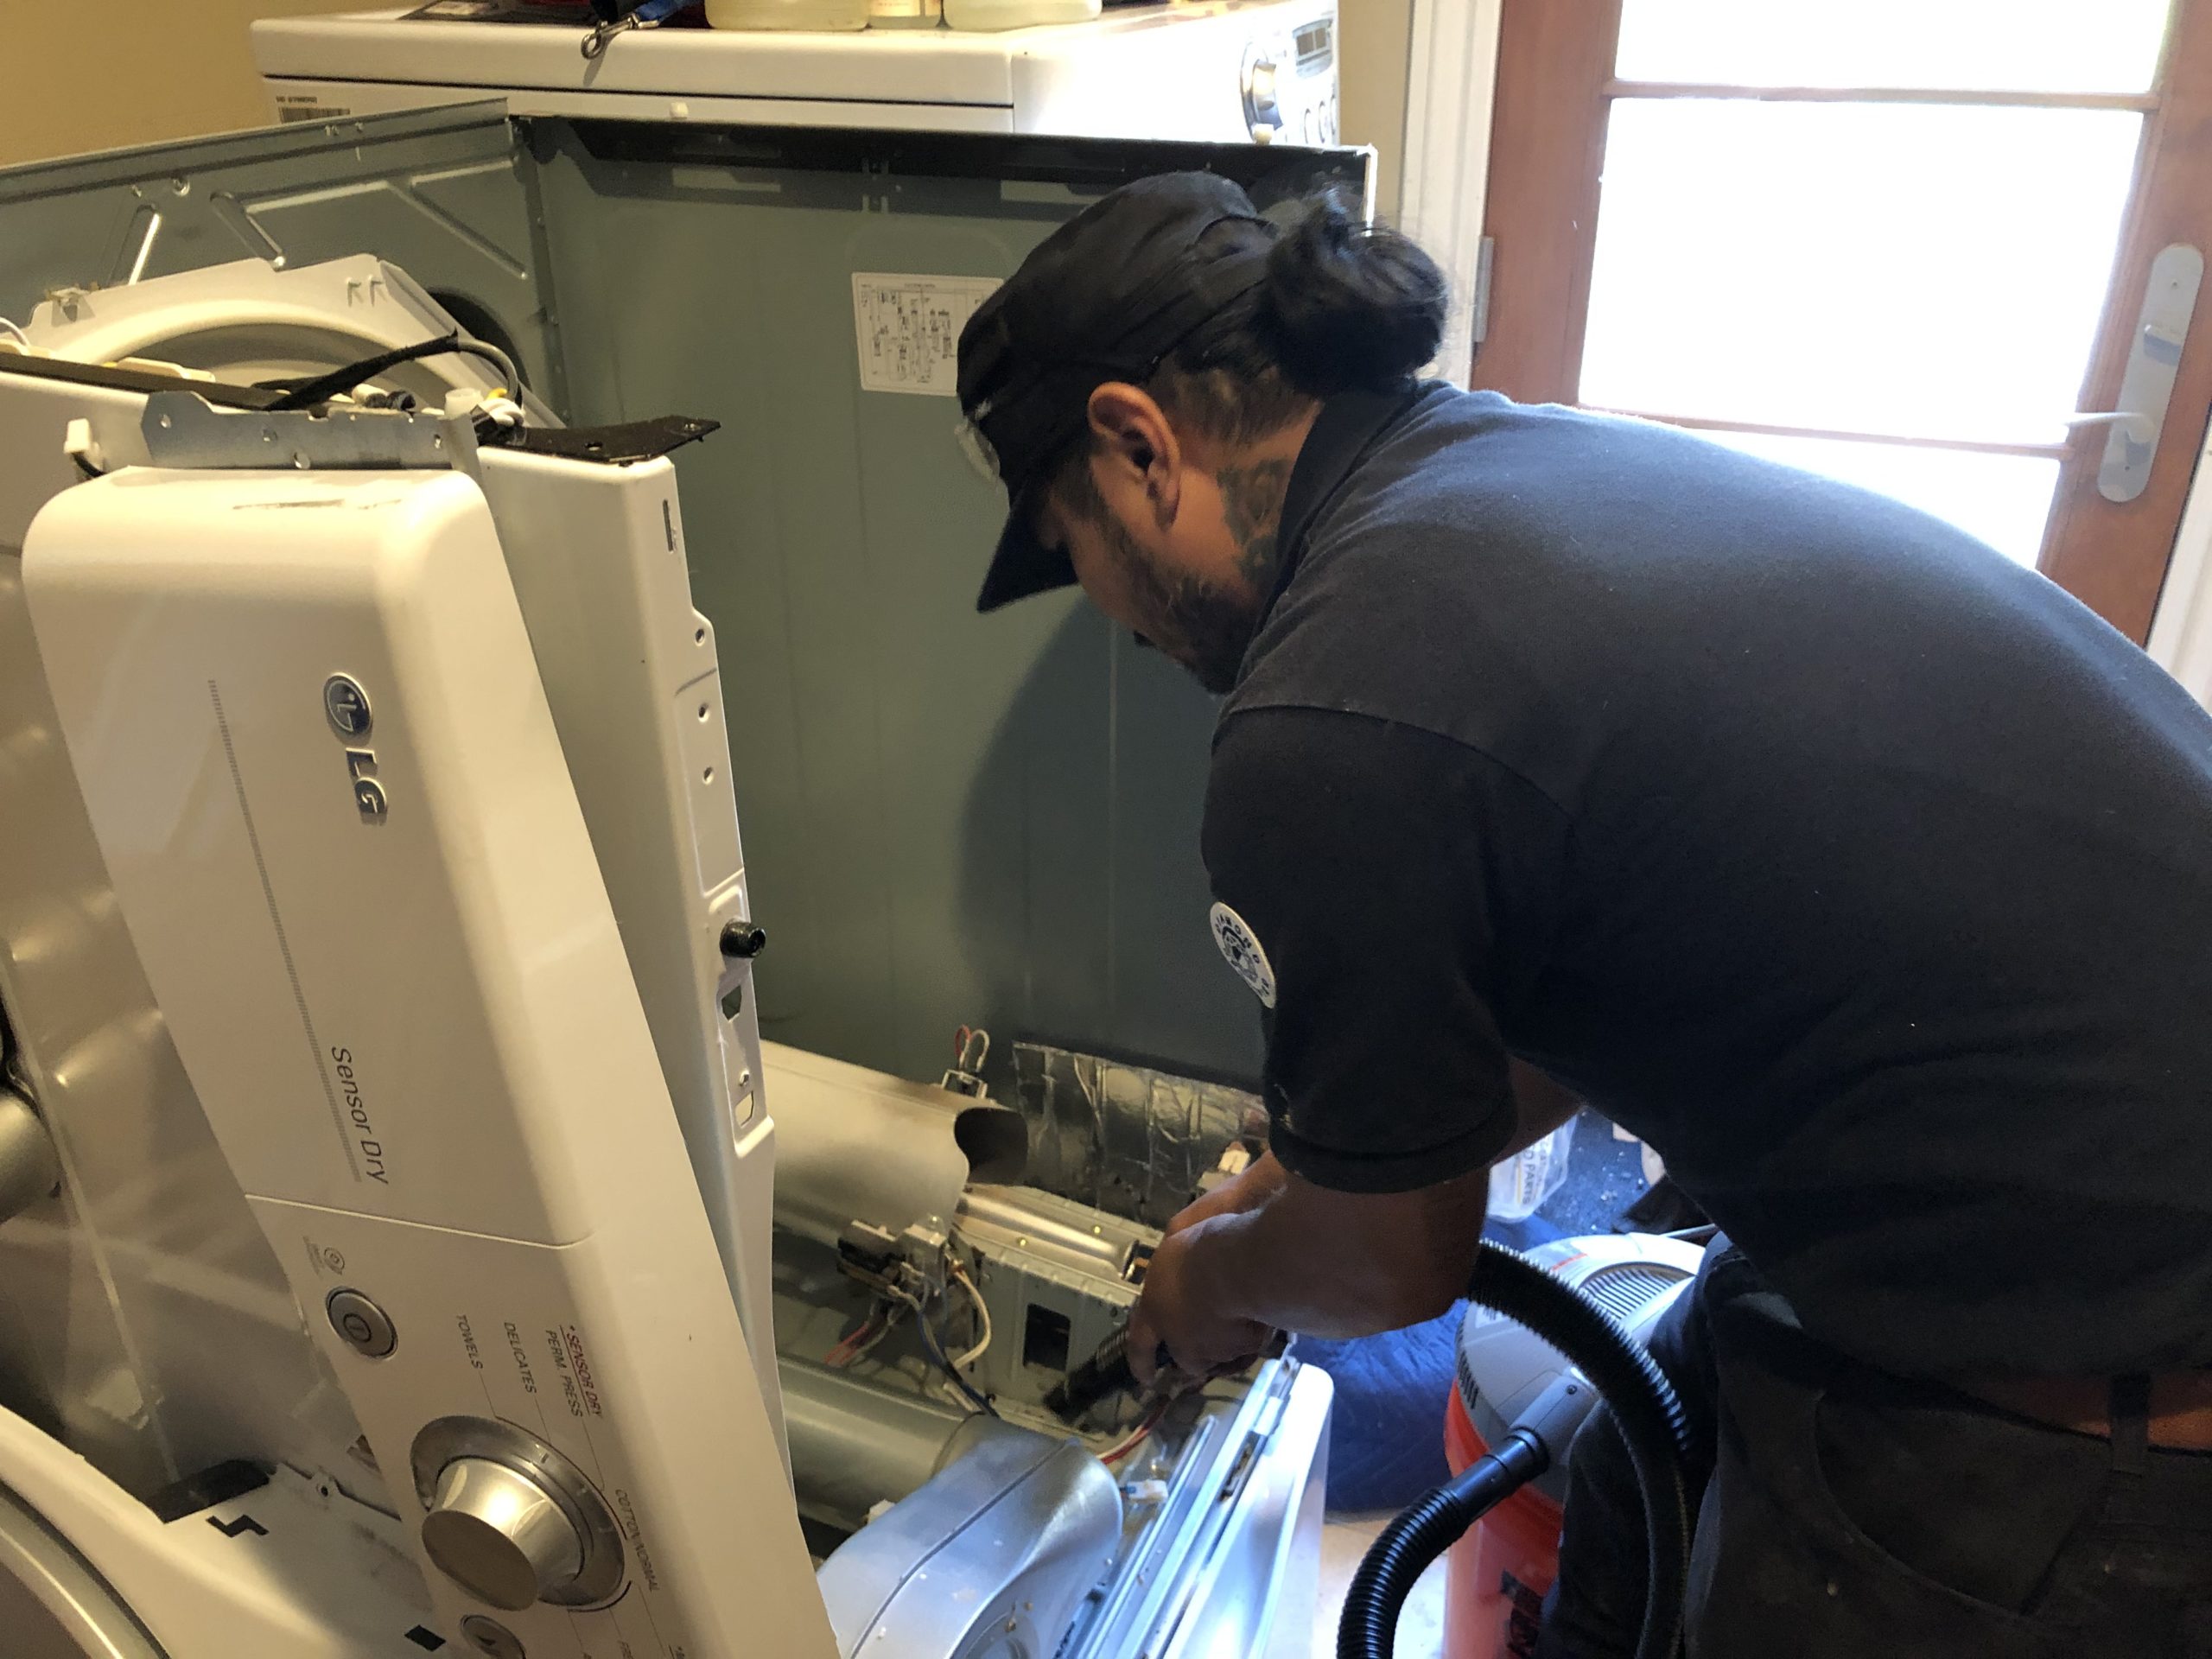 A technician repairing a gas dryer